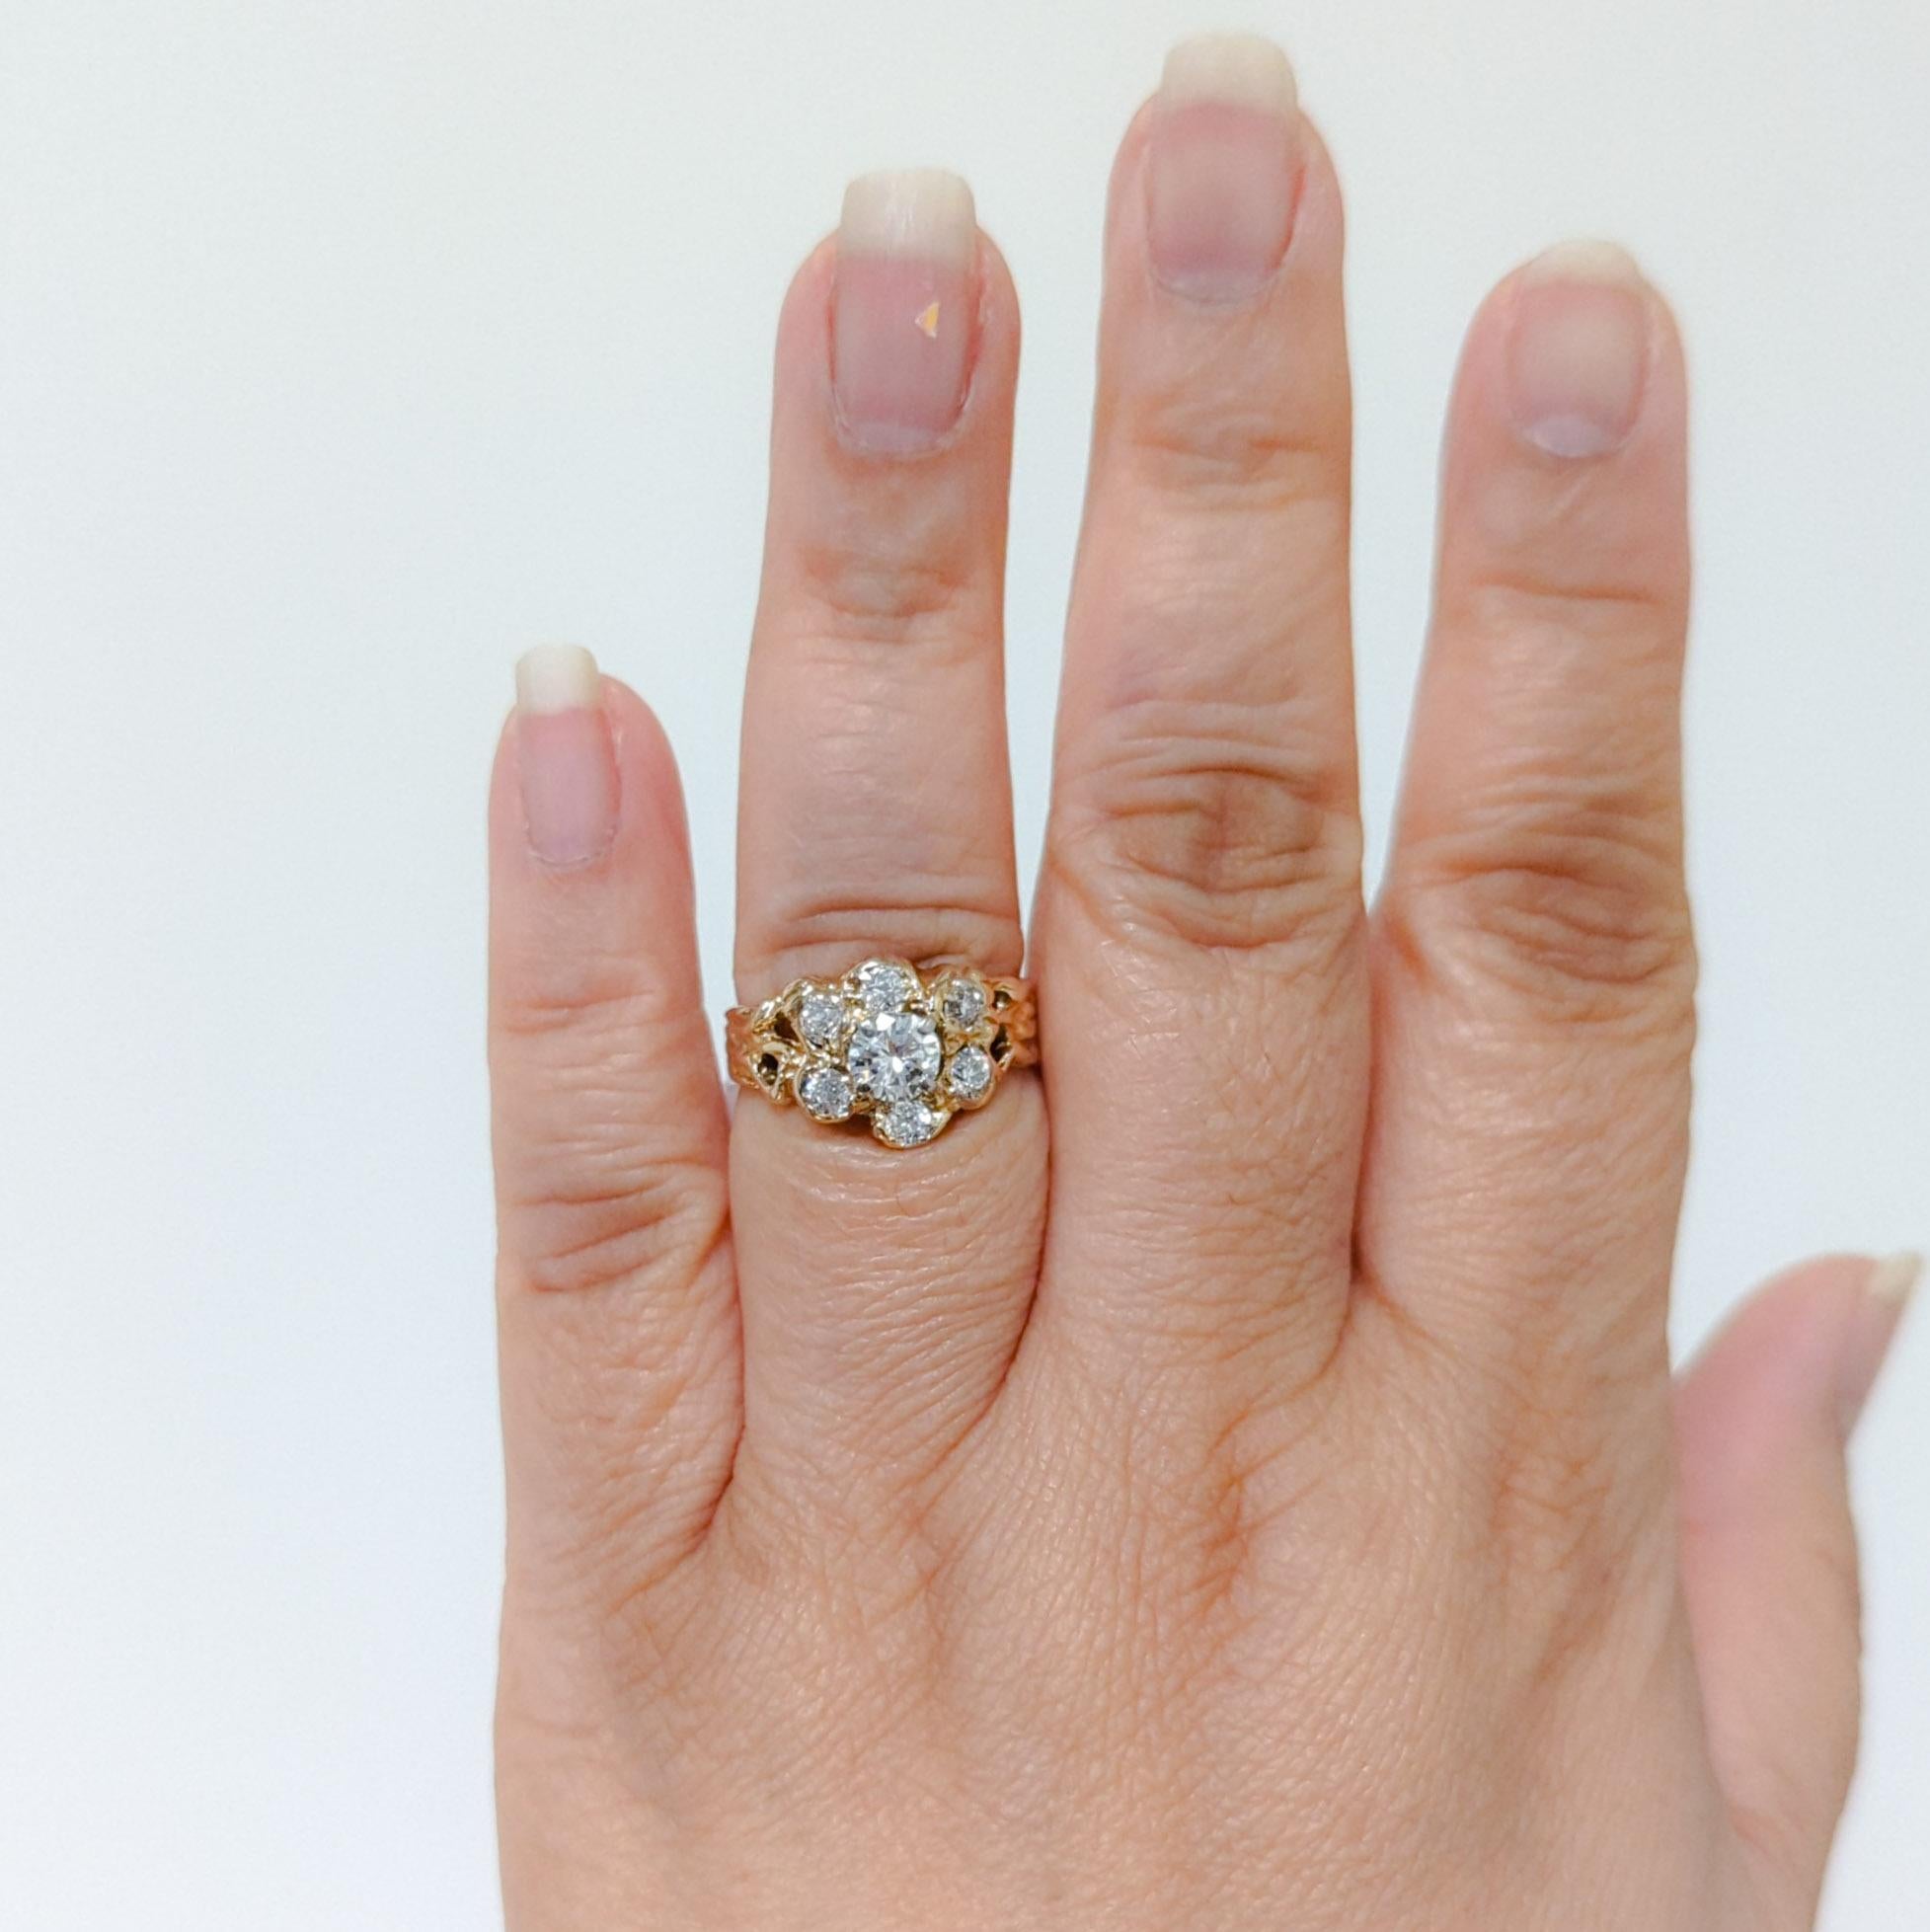 Wunderschöne 0,85 ct. weiße Diamanten in Form einer Blume.  Insgesamt 7 Steine.  Handgefertigt in 14k Gelbgold.  Ring Größe 8,5.